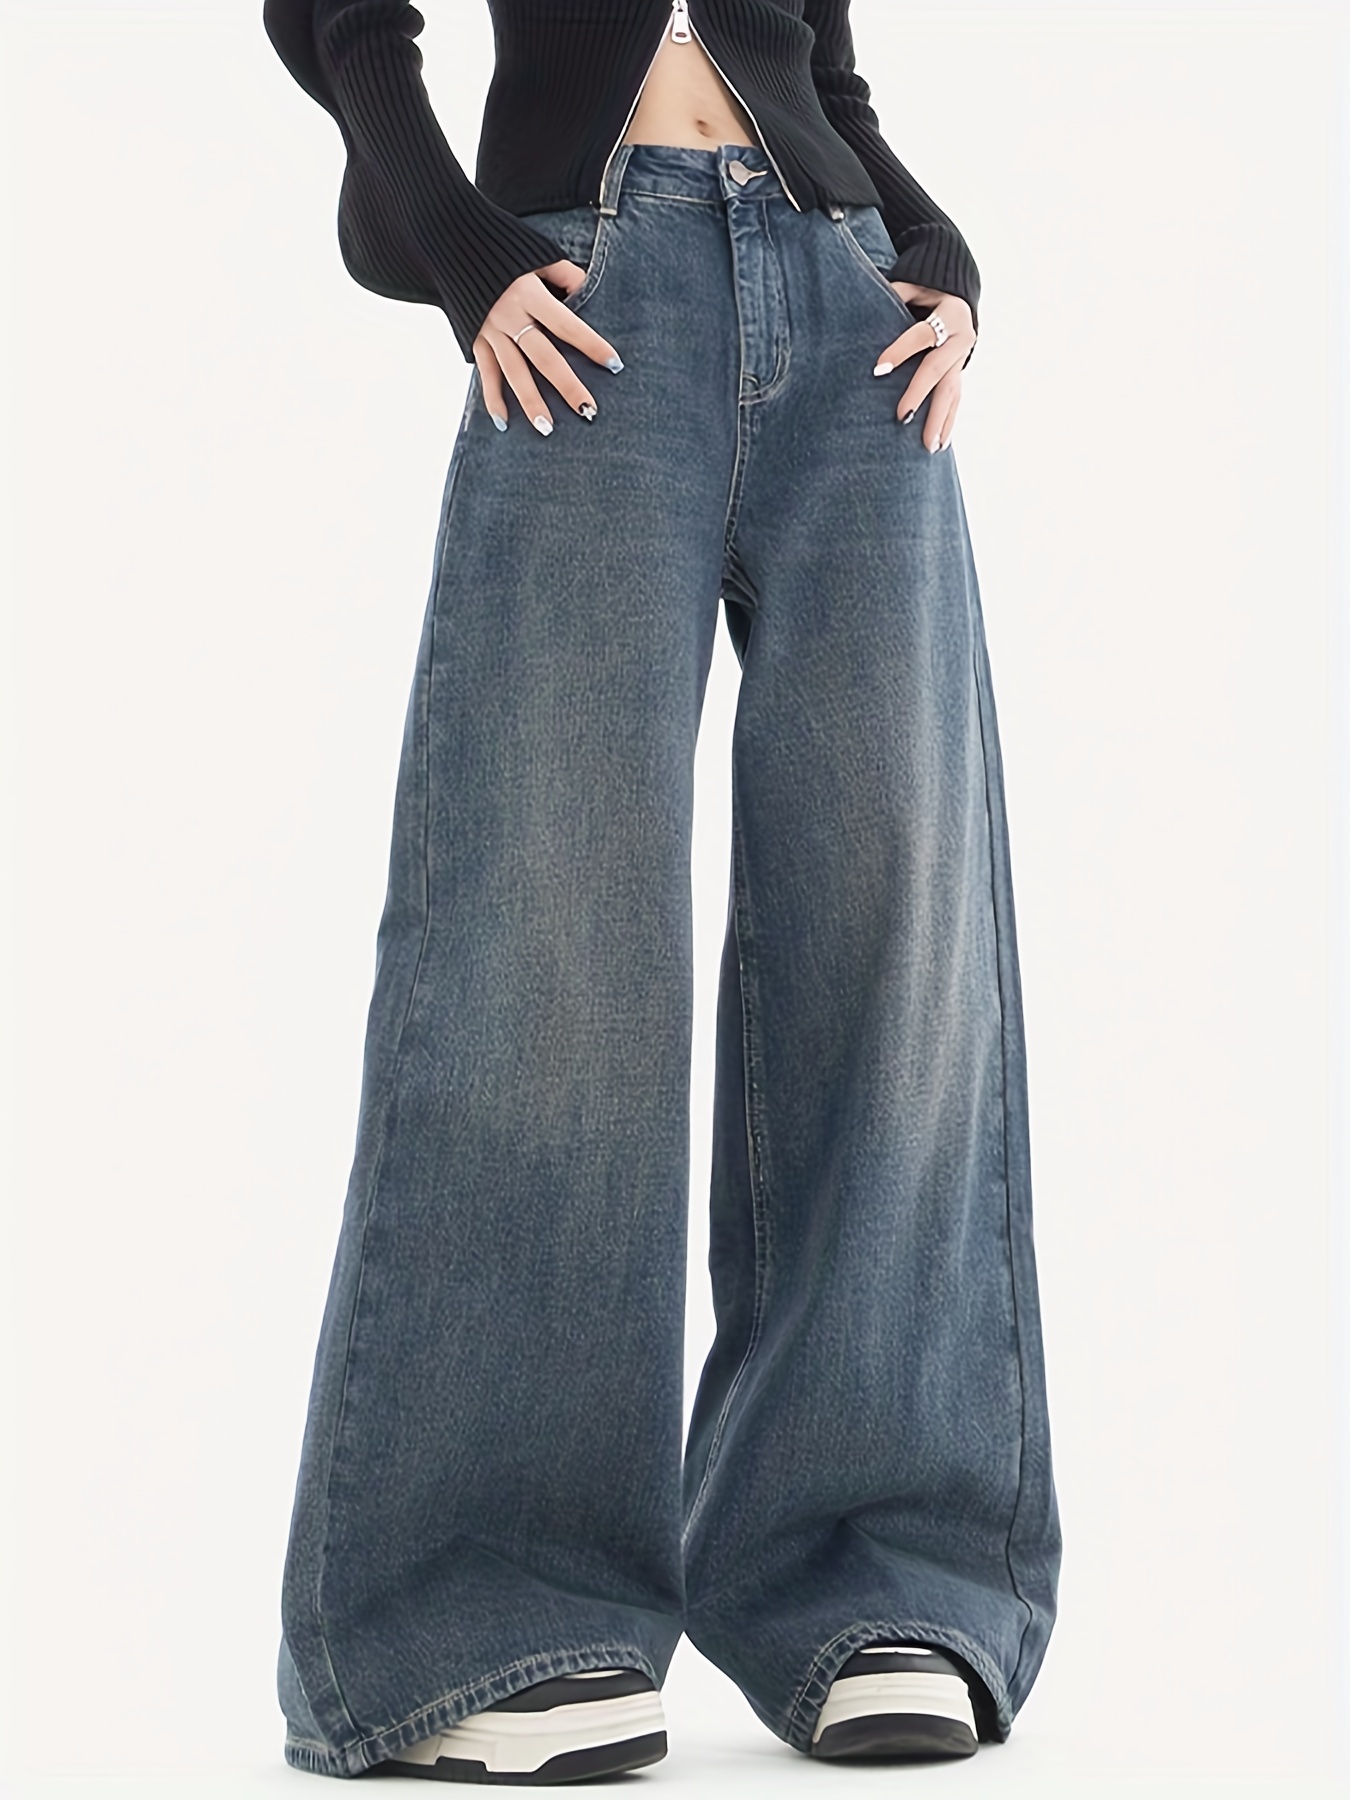 Multi Flap Pocket Solid Color Cargo Jeans, Loose Fit Zipper Button Closure  Casual Wide Leg Denim Pants, Women's Denim Jeans & Clothing